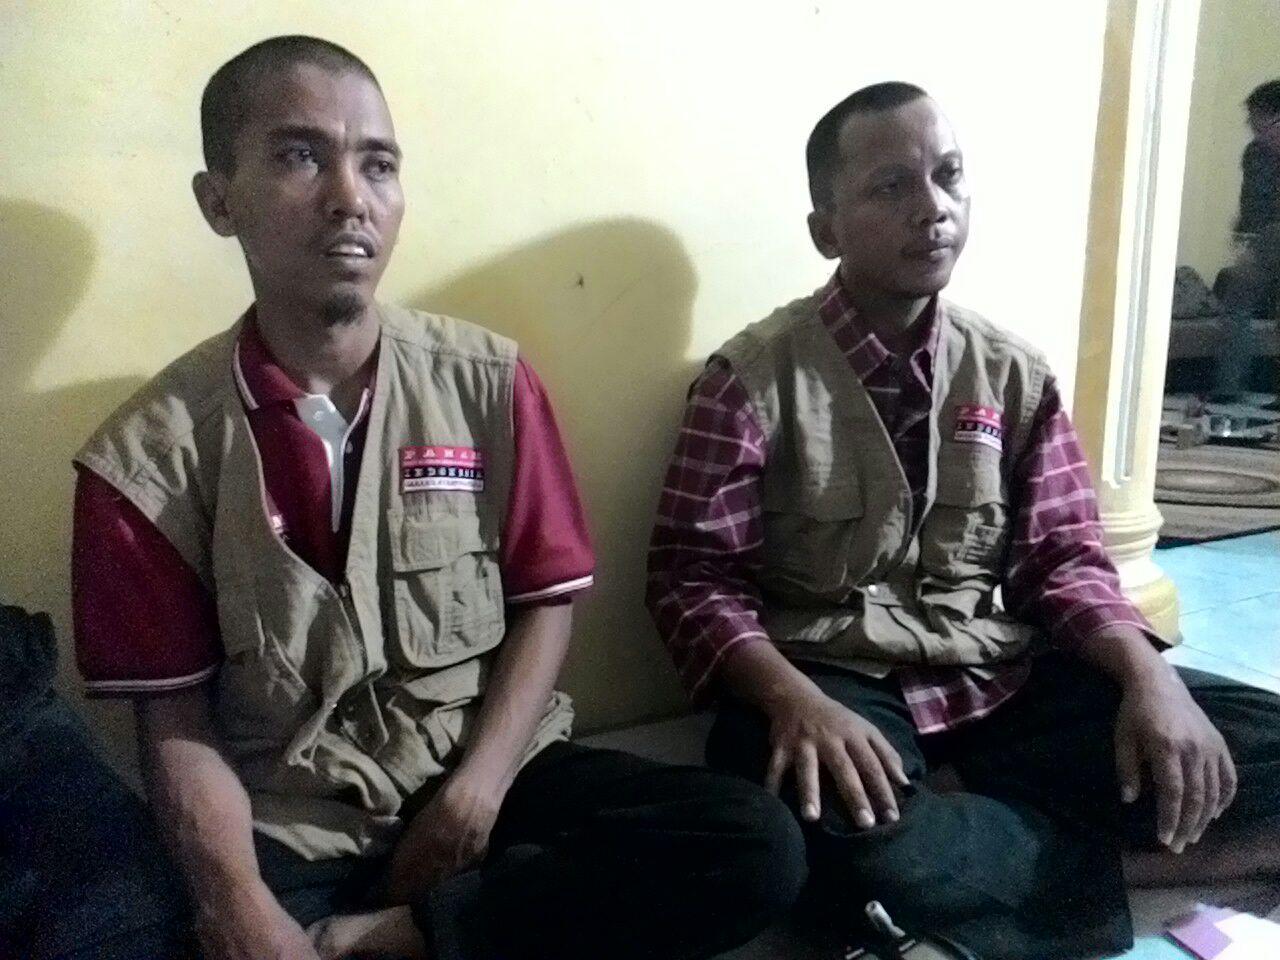 Kasus Aceh Singkil Bukan Masalah Intoleransi, Tapi Ketidakbecusan Pemerintah